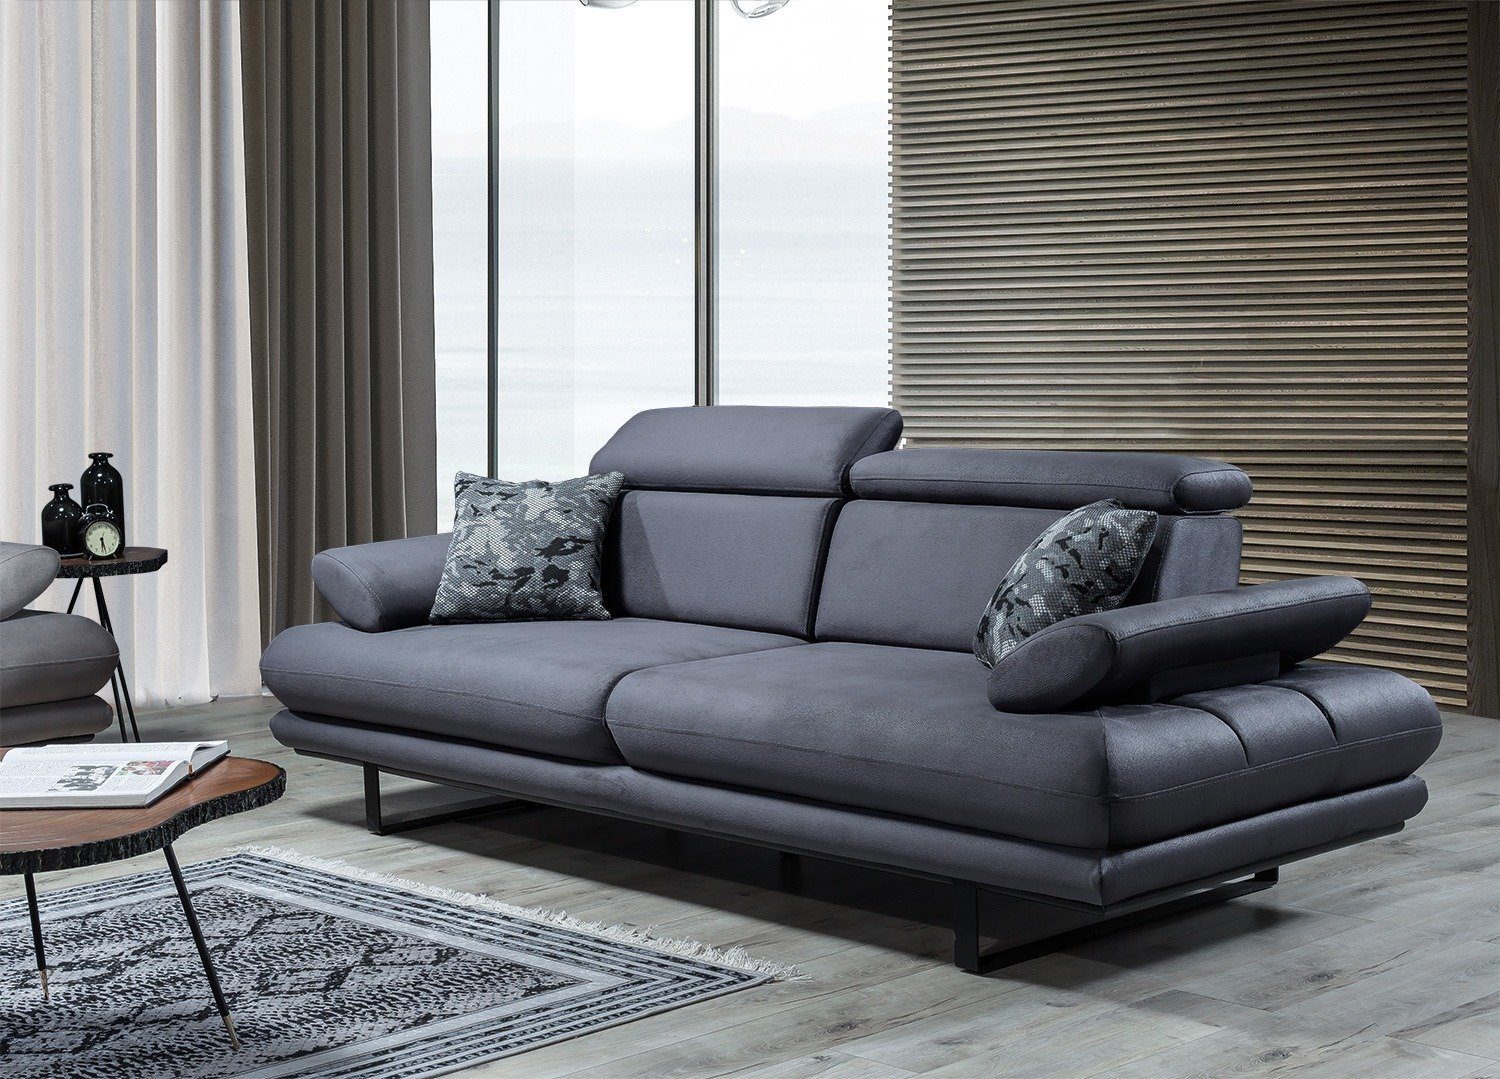 Villa Möbel Sofa Energy, 1 Stk. 2-Sitzer, Quality Made in Turkey, stylische Sitztiefen- und Armlehnenverstellung Anthrazit | Alle Sofas